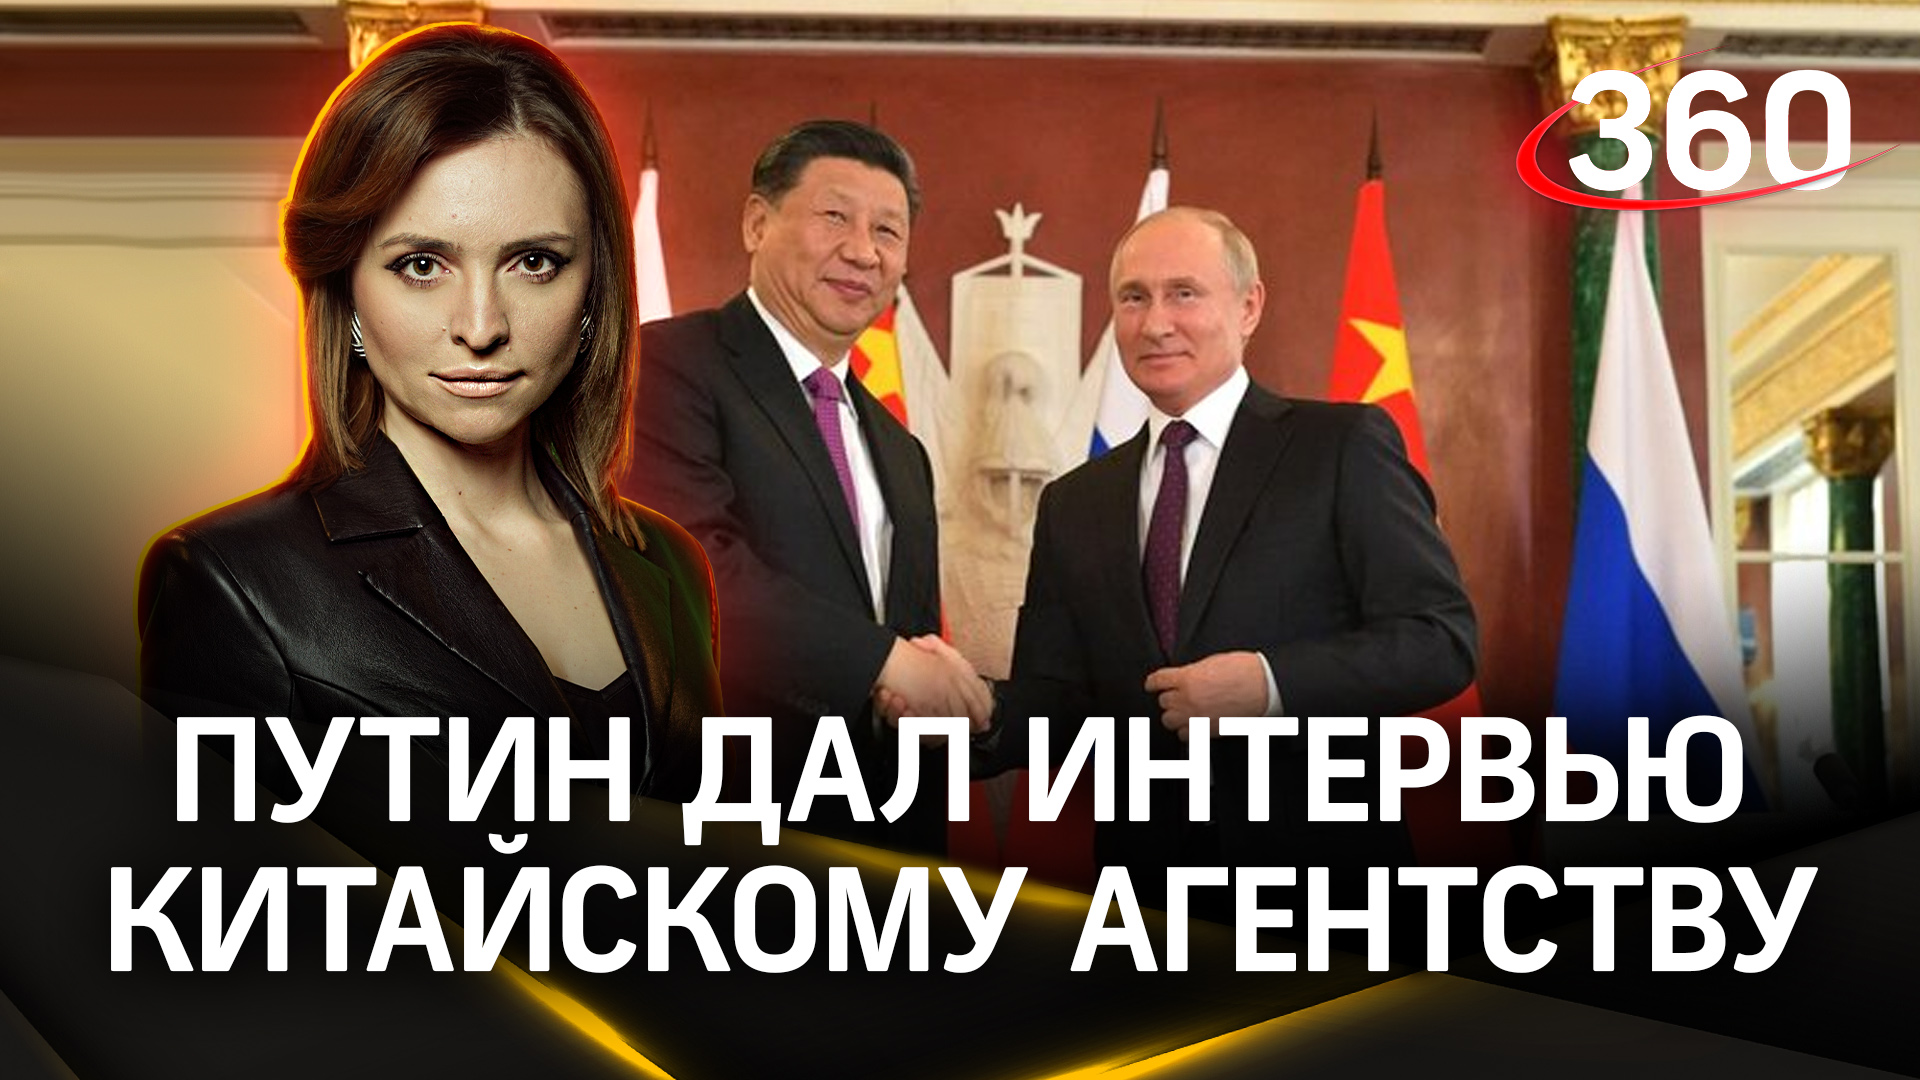 Партнерство с Китаем, лицемерие Запада: разбор ключевых тем из интервью Путина перед визитом в КНР